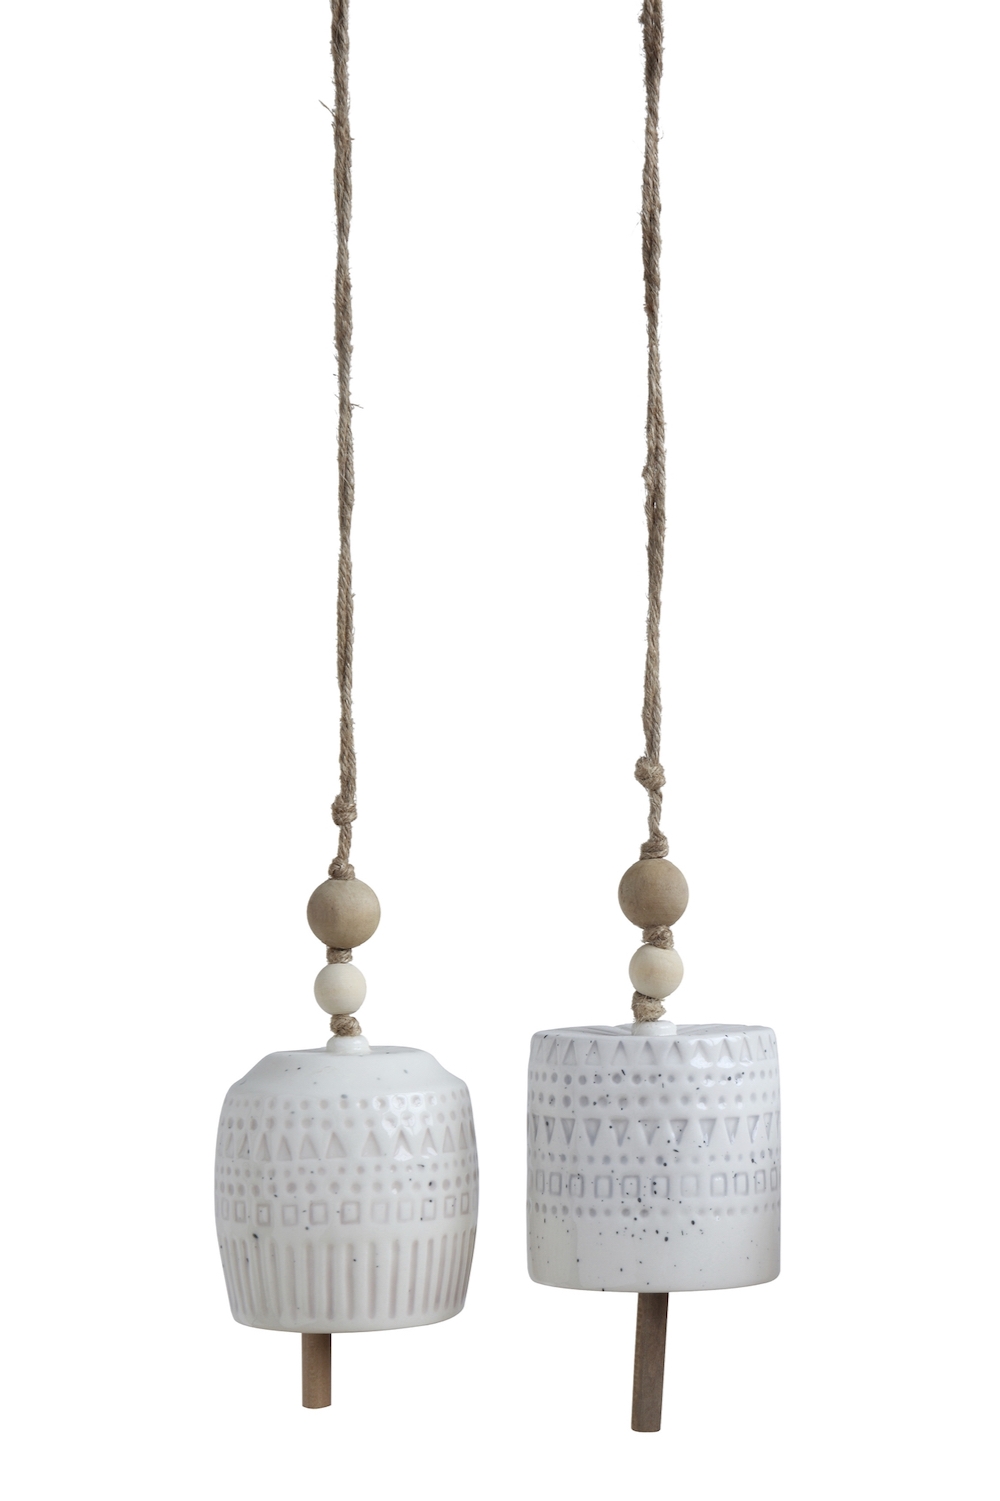 2 Keramik Glocken an Juteschnur